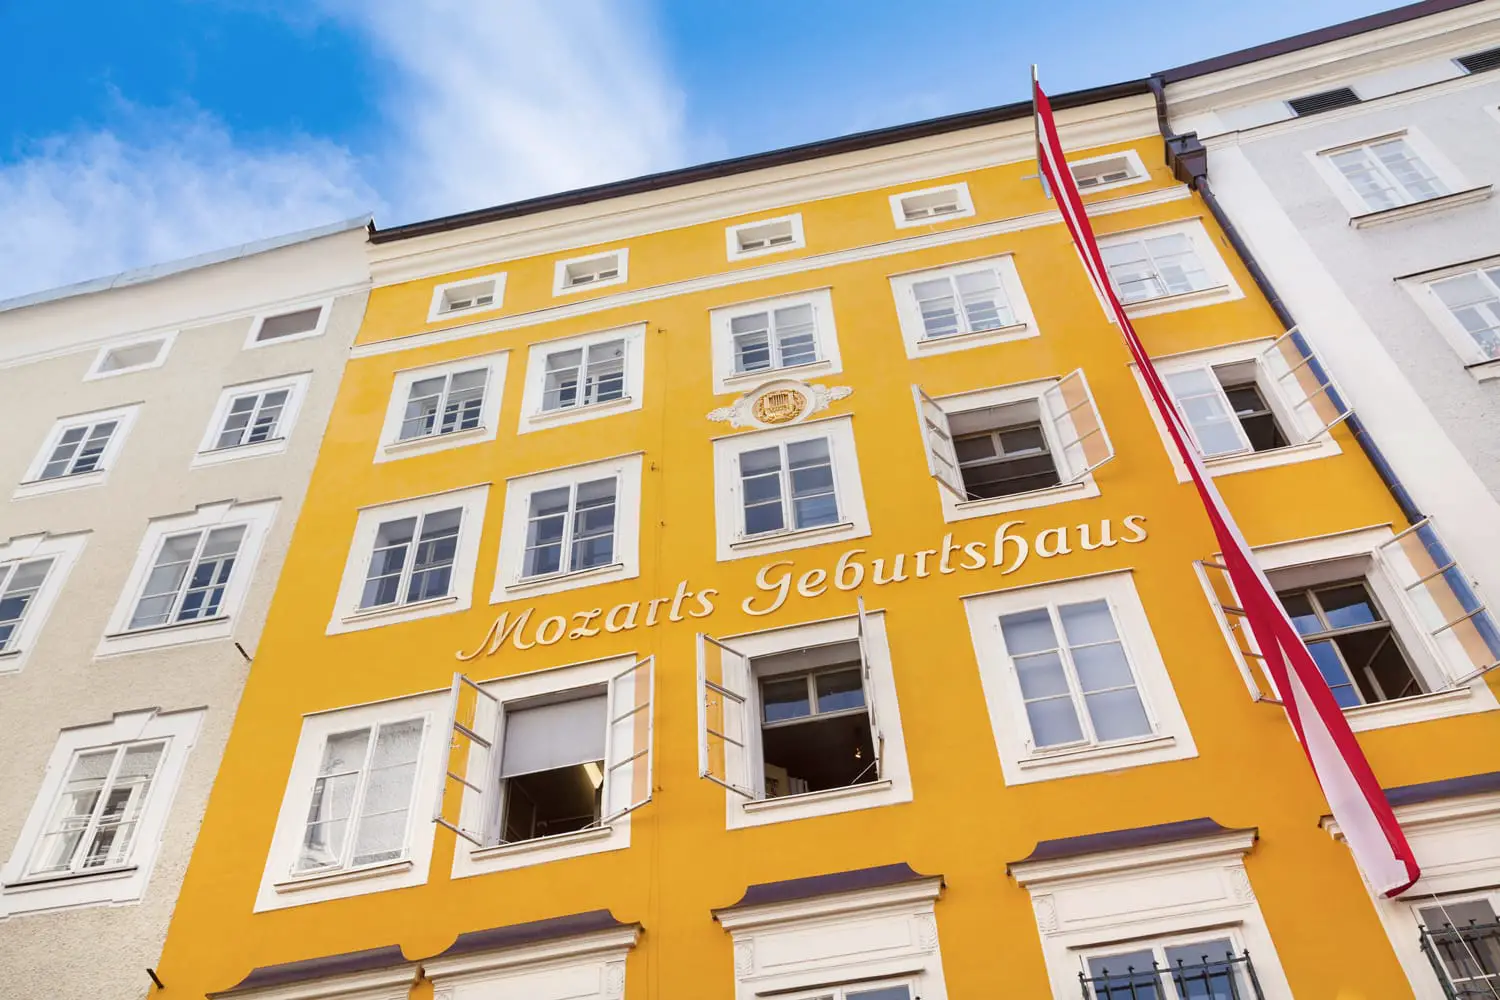 Τόπος γέννησης του Wolfgang Amadeus Mozart στο Σάλτσμπουργκ της Αυστρίας